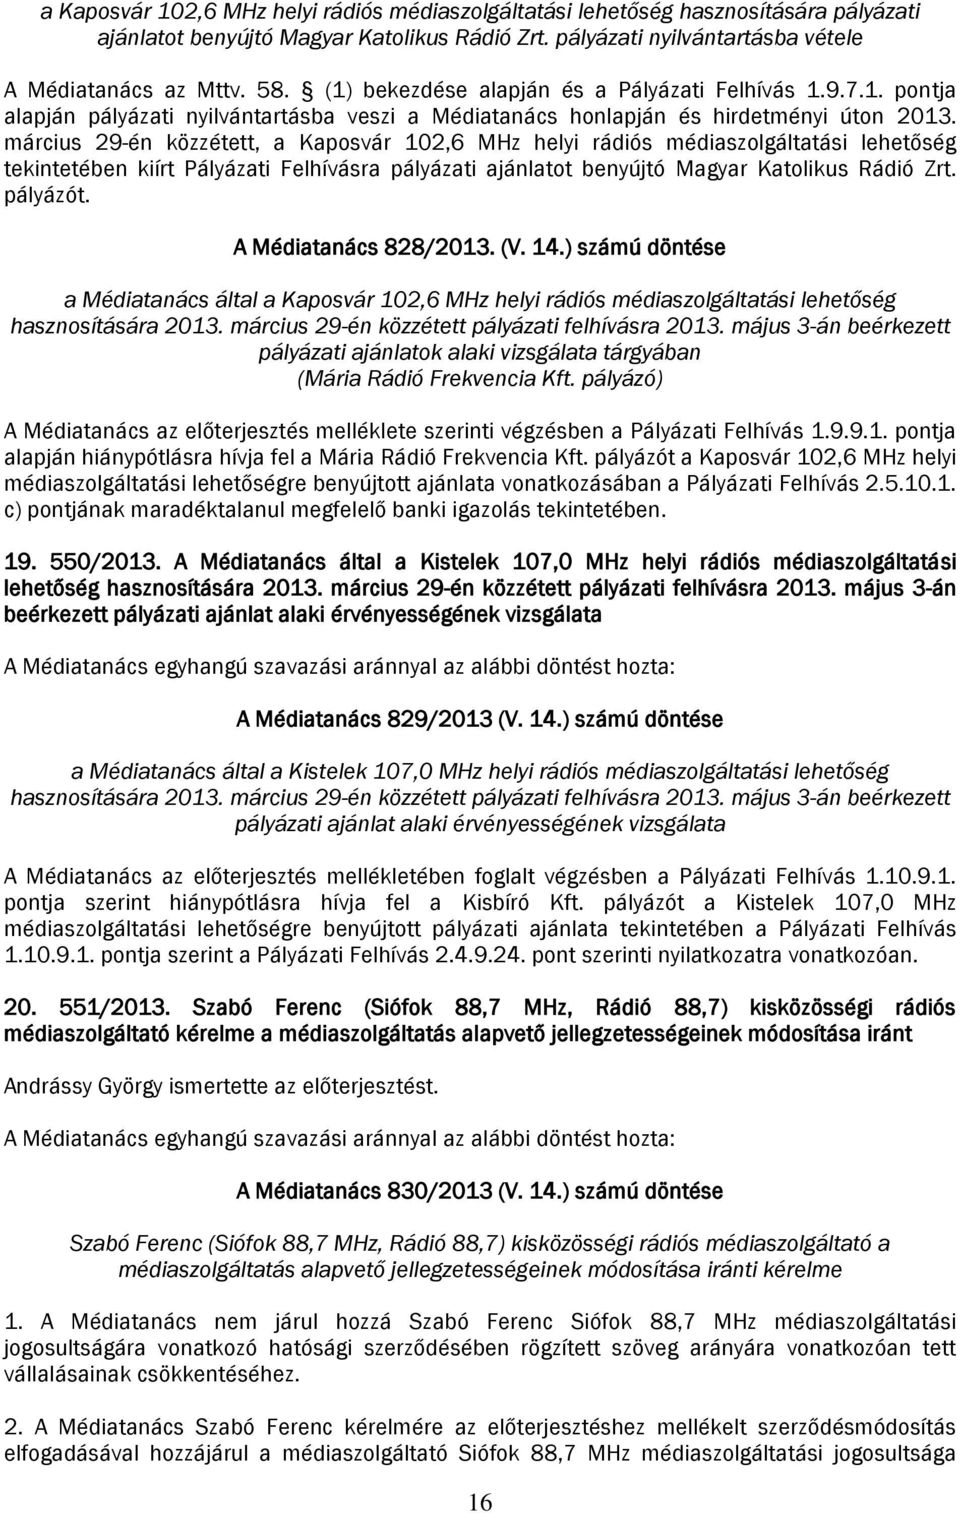 március 29-én közzétett, a Kaposvár 102,6 MHz helyi rádiós médiaszolgáltatási lehetőség tekintetében kiírt Pályázati Felhívásra pályázati ajánlatot benyújtó Magyar Katolikus Rádió Zrt. pályázót.